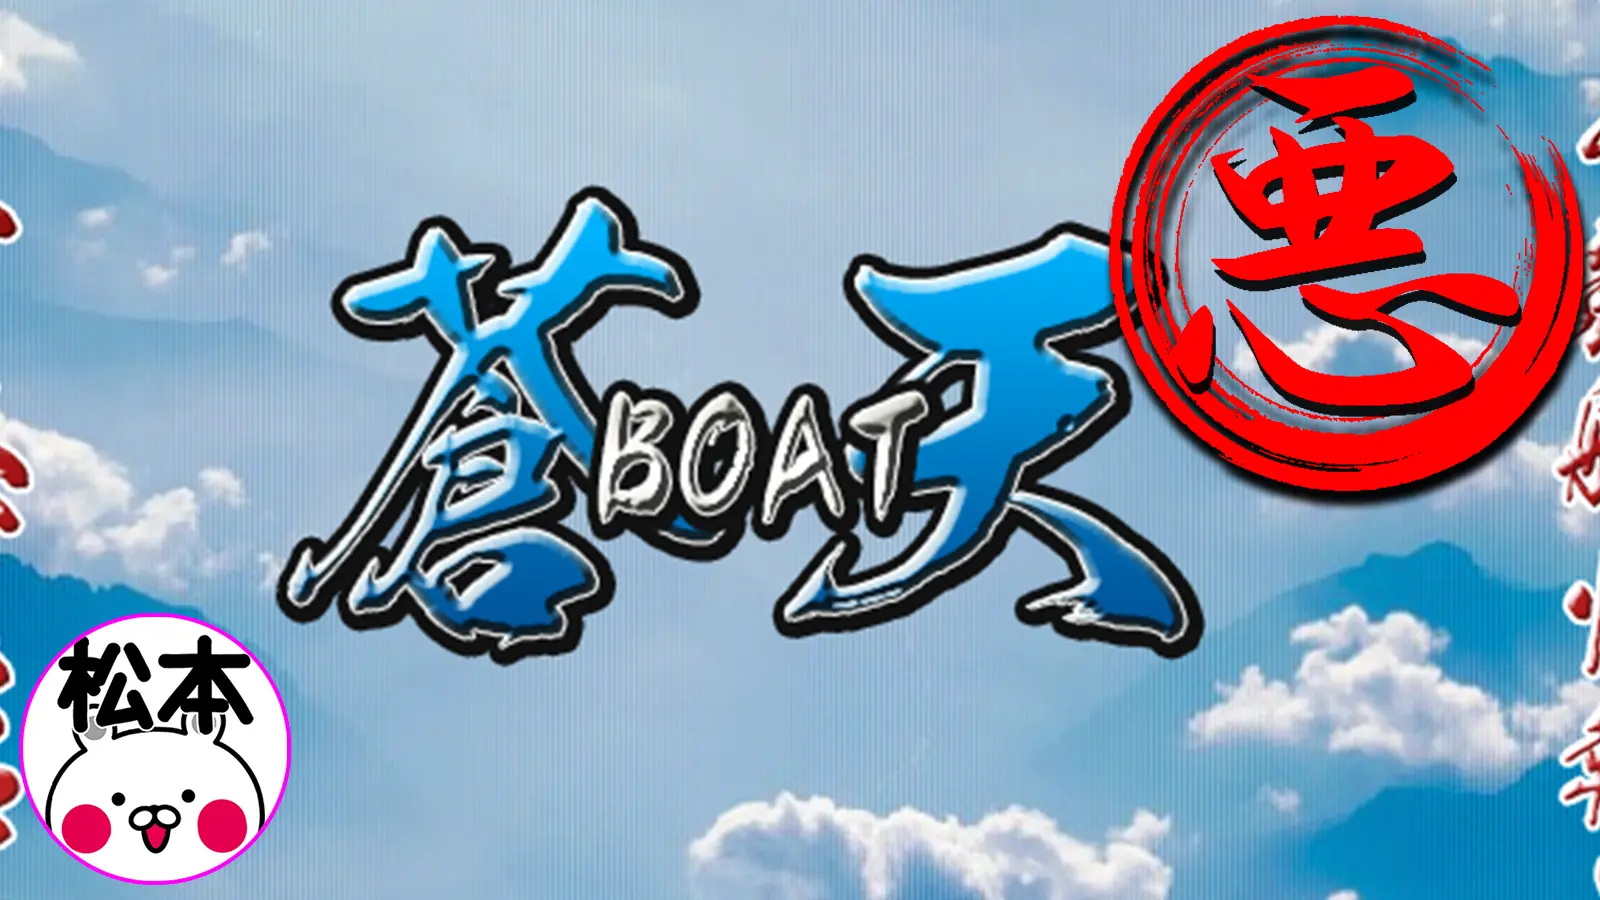 検証の結果、稼げない悪徳競艇予想サイトとして認定された競艇予想サイト「蒼天ボート（蒼天BOAT）」のサムネイル